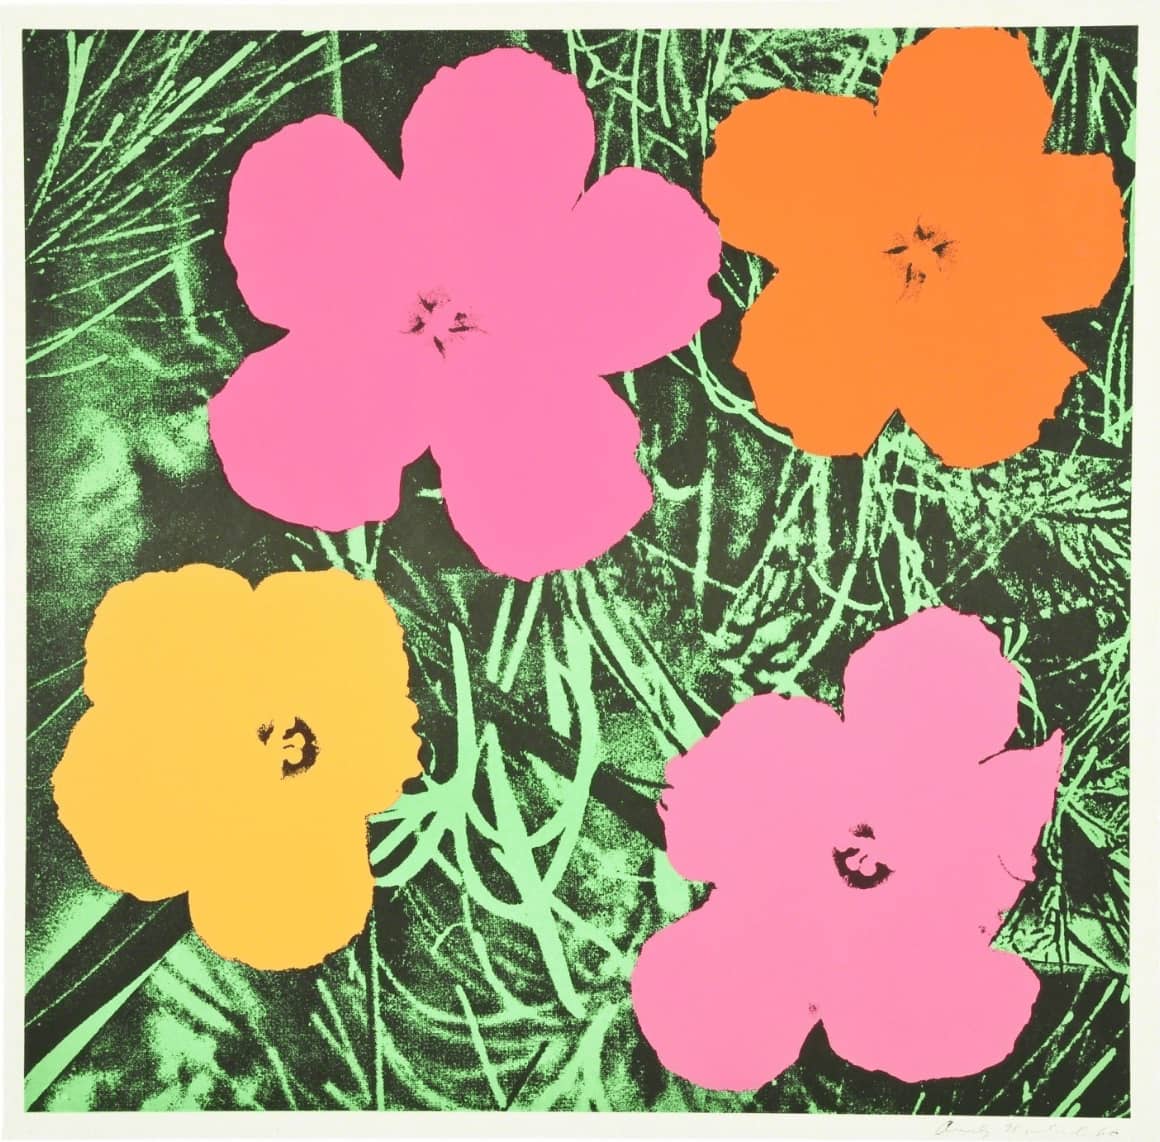 Andy Warhol Flowers (Feldman & Schellmann II.6) Offset lithograph on wove paper